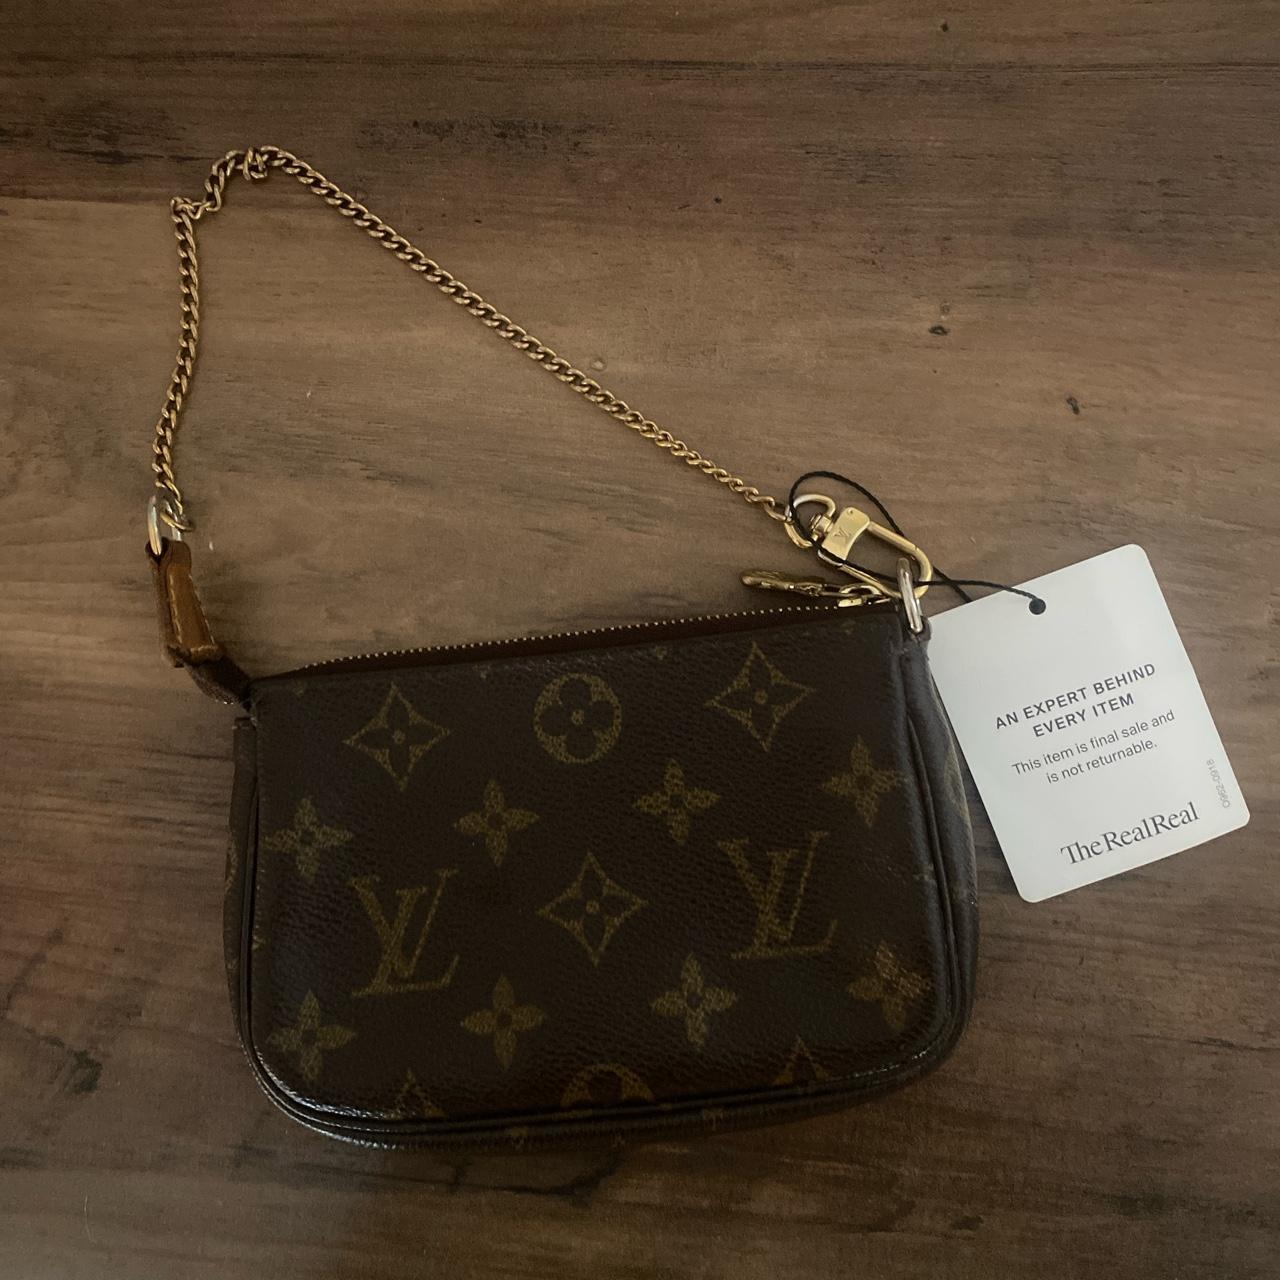 Louis Vuitton Mini Pochette Monogram Bag - Farfetch